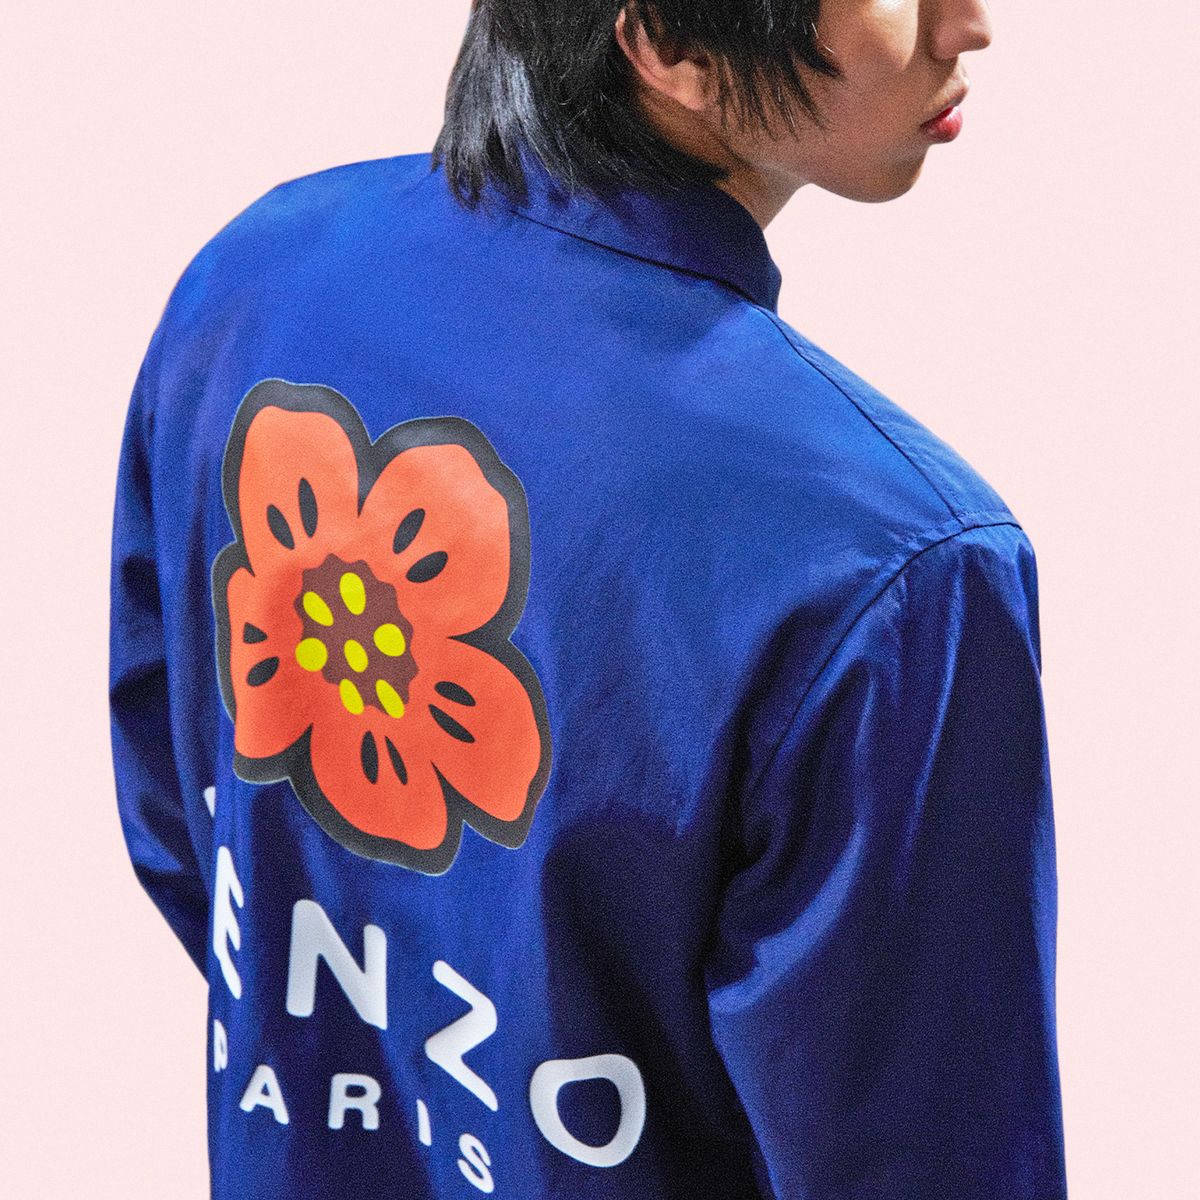 A Timeline of Nigo's Career: How He Got To Kenzo